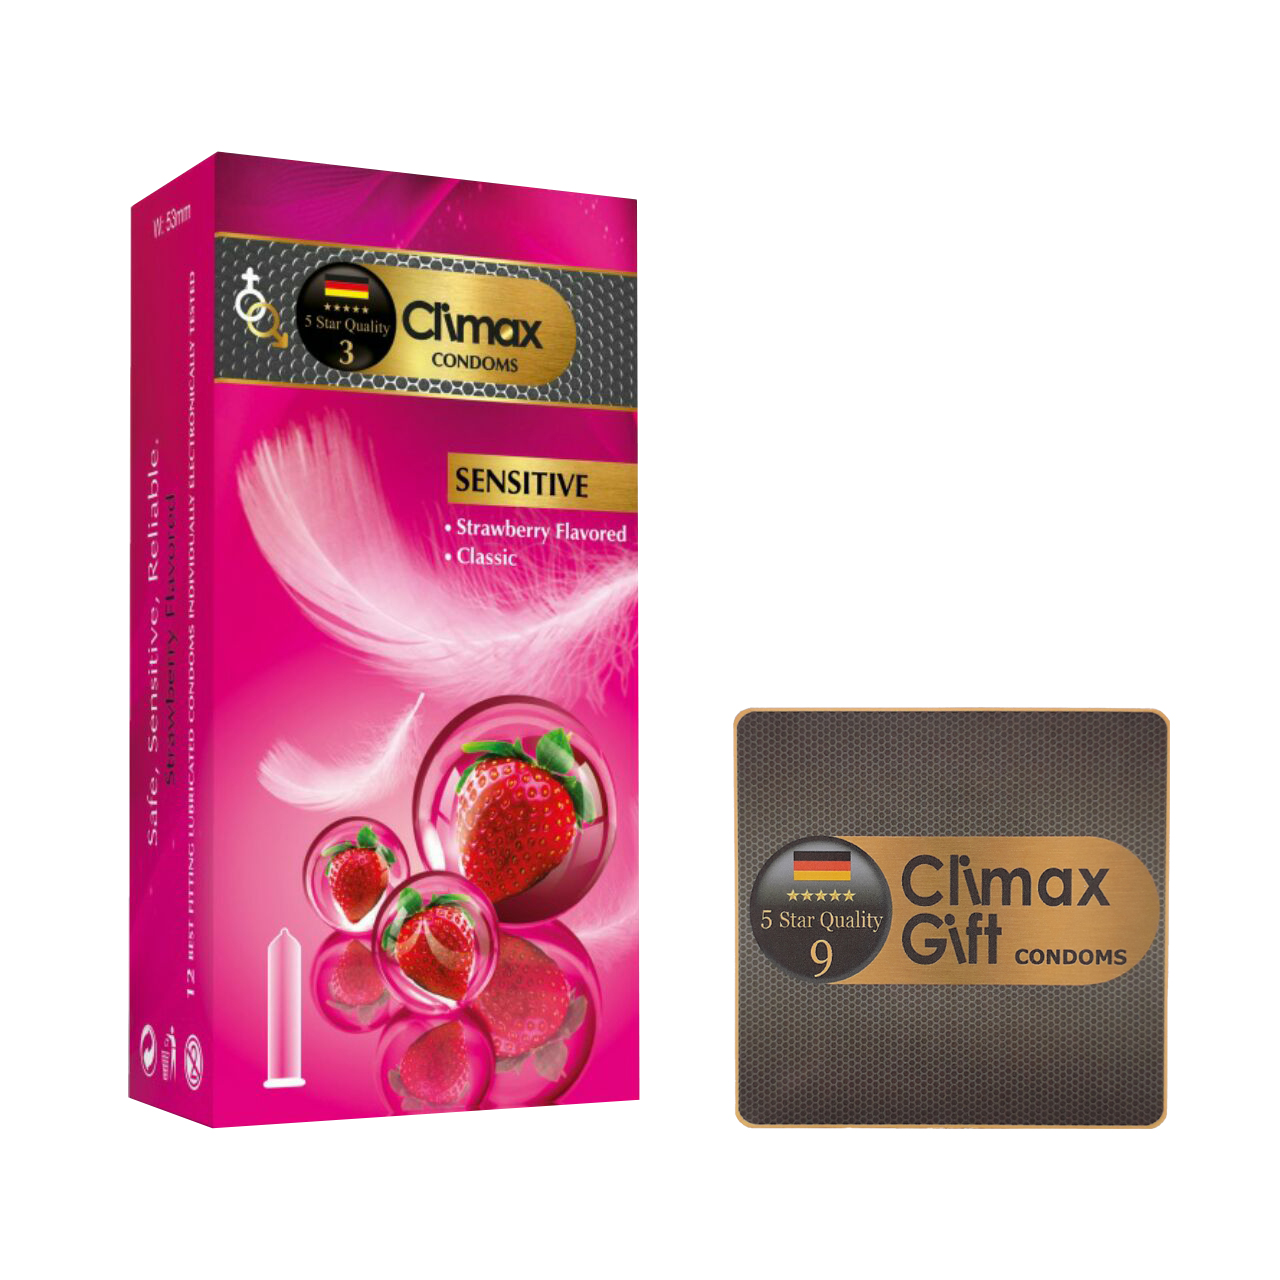 کاندوم کلایمکس مدل Sensitive بسته 12 عددی به همراه کاندوم مدل Gift